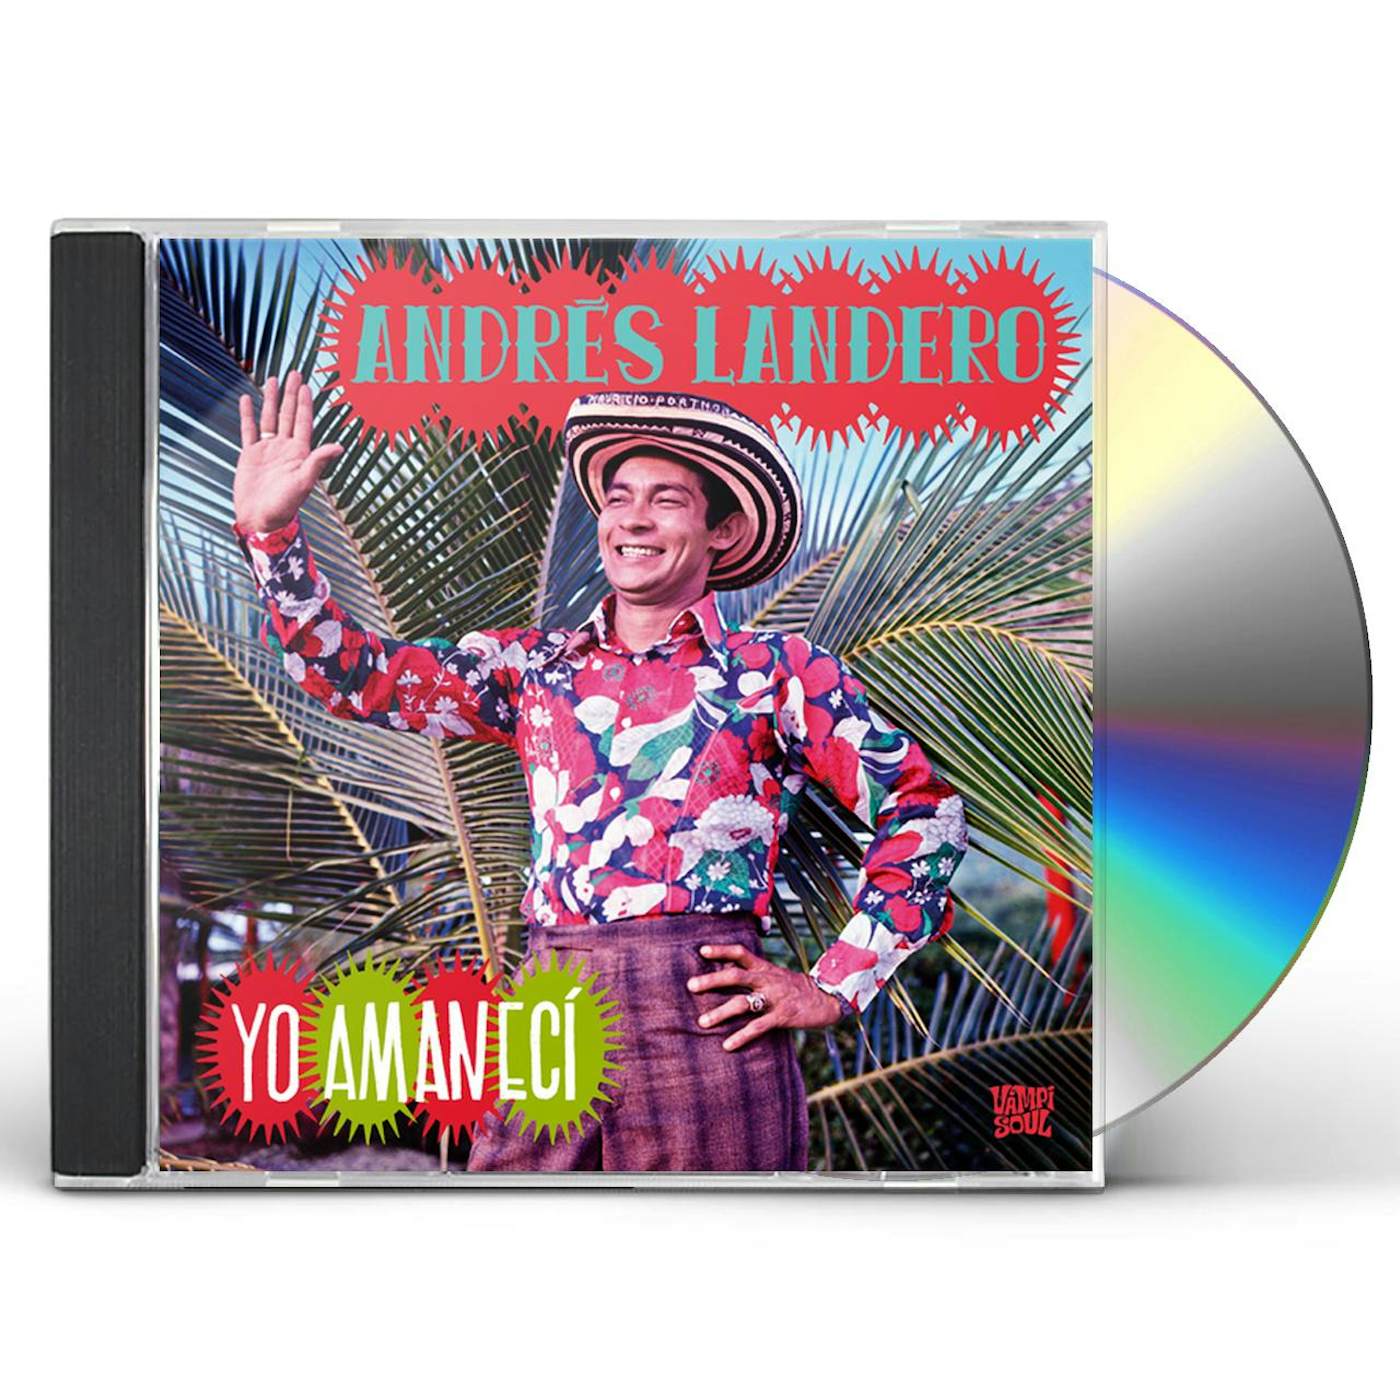 Andres Landero YO AMANECI CD